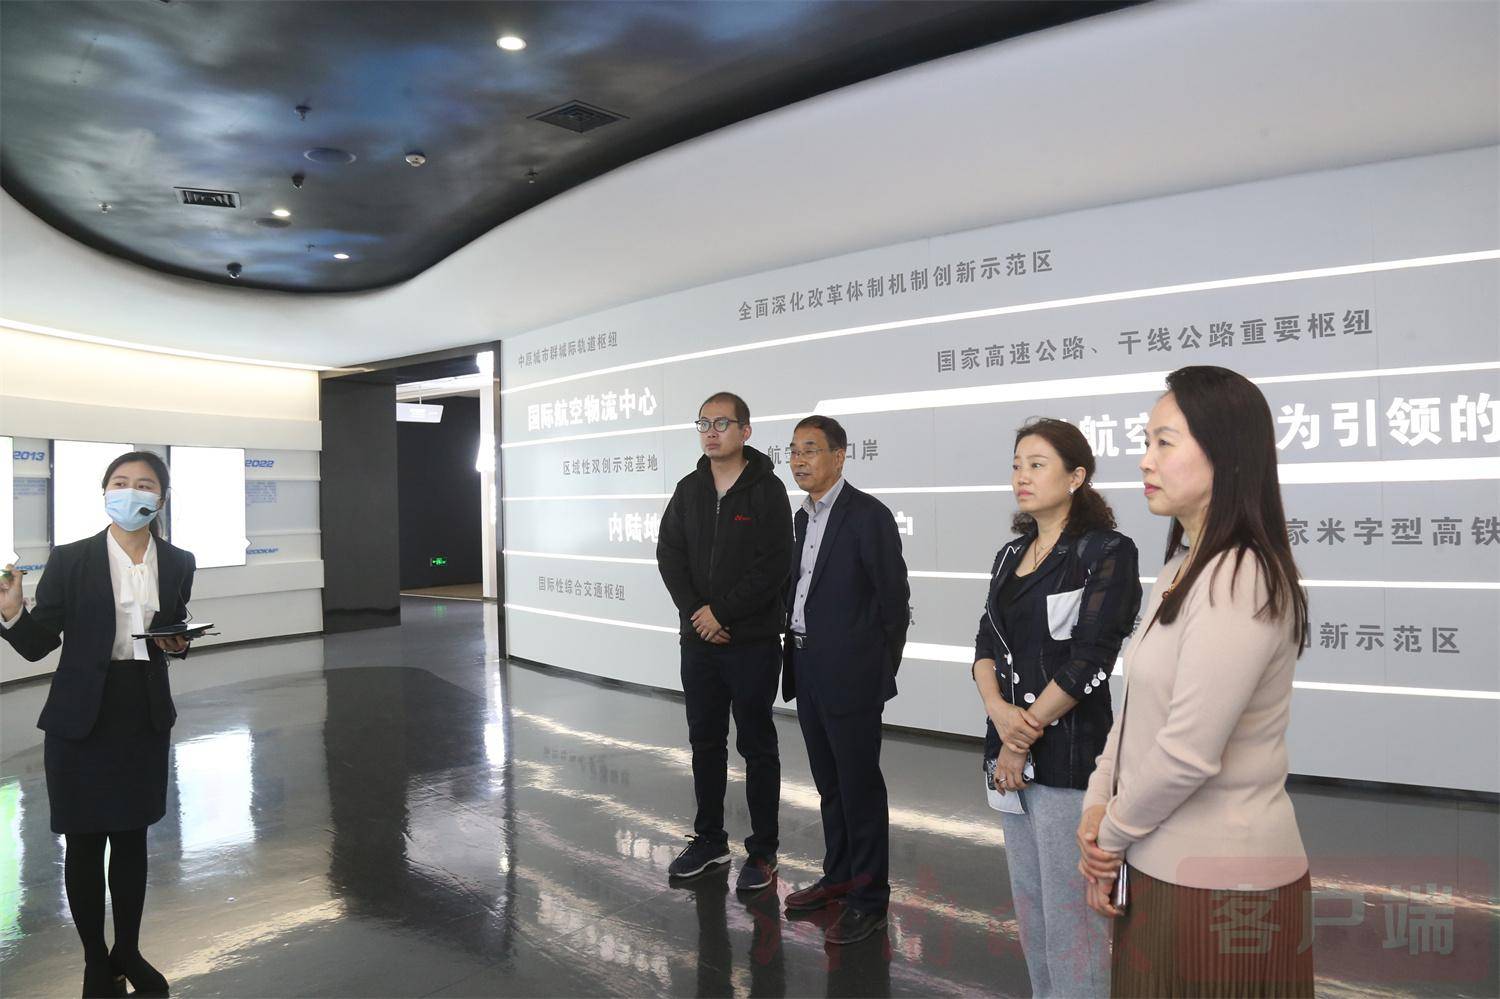 上海交通大学人工智能研究院副院长刘燕京一行到访郑州外国语学校航空港校区